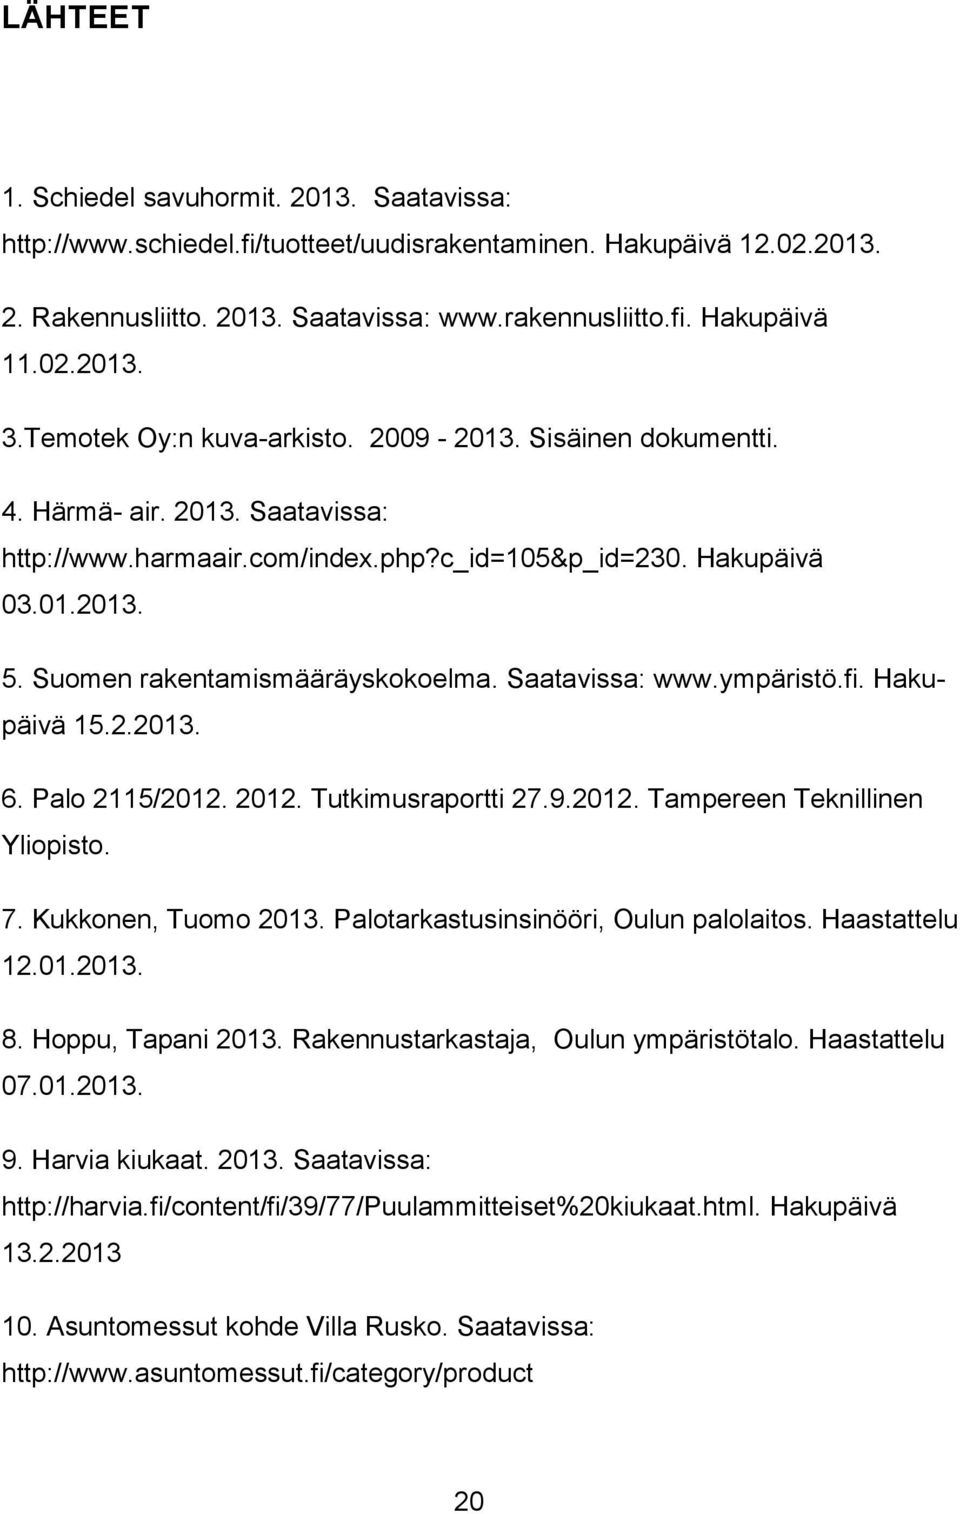 Suomen rakentamismääräyskokoelma. Saatavissa: www.ympäristö.fi. Hakupäivä 15.2.2013. 6. Palo 2115/2012. 2012. Tutkimusraportti 27.9.2012. Tampereen Teknillinen Yliopisto. 7. Kukkonen, Tuomo 2013.